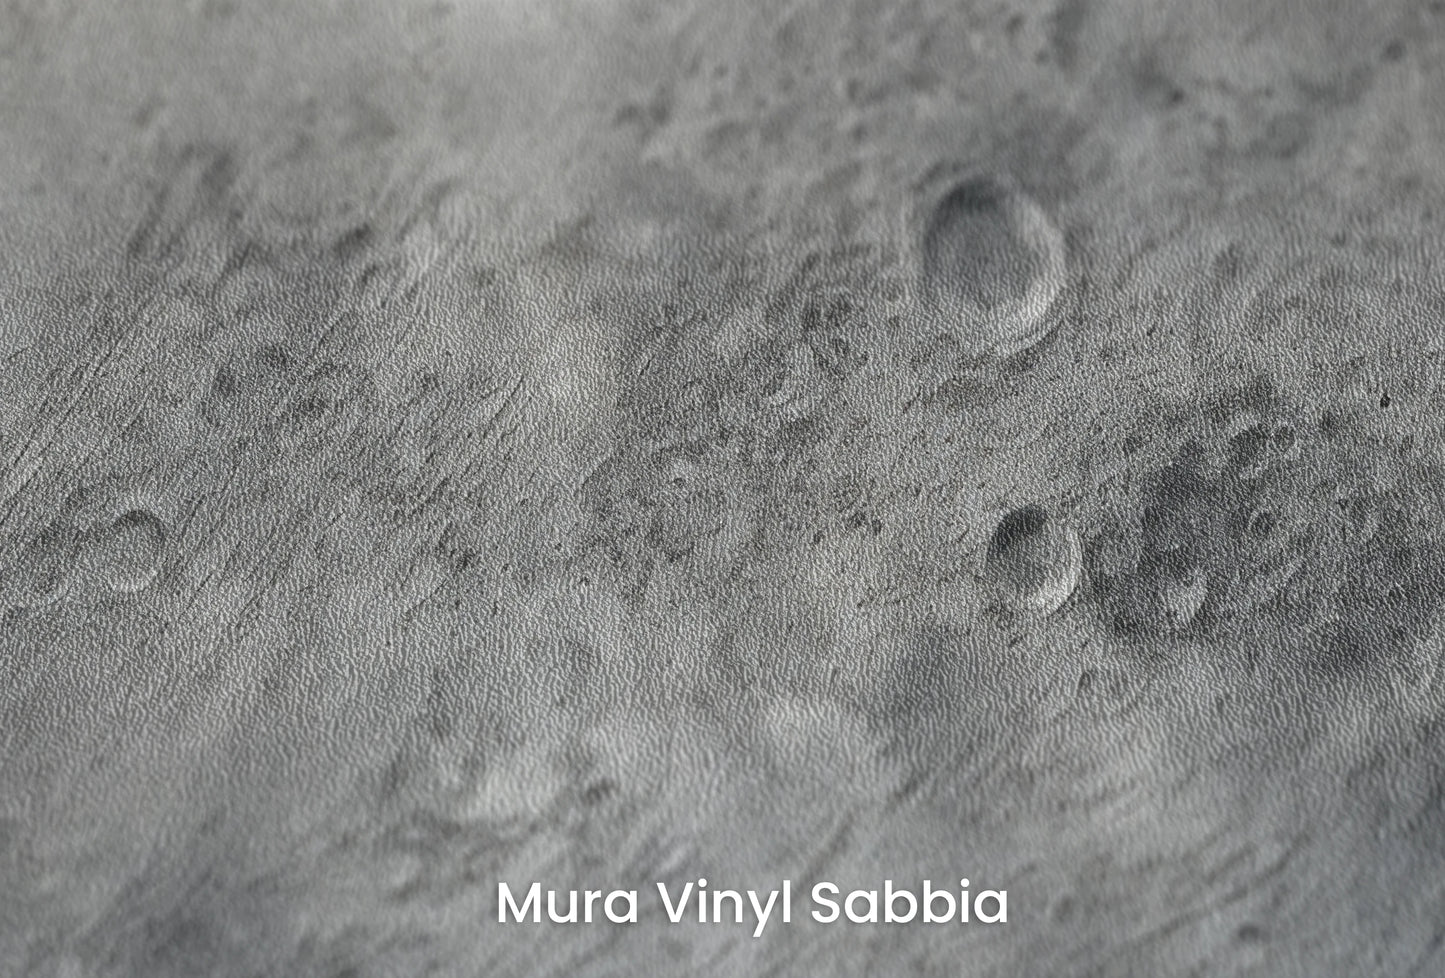 Zbliżenie na artystyczną fototapetę o nazwie Lunar Majesty na podłożu Mura Vinyl Sabbia struktura grubego ziarna piasku.